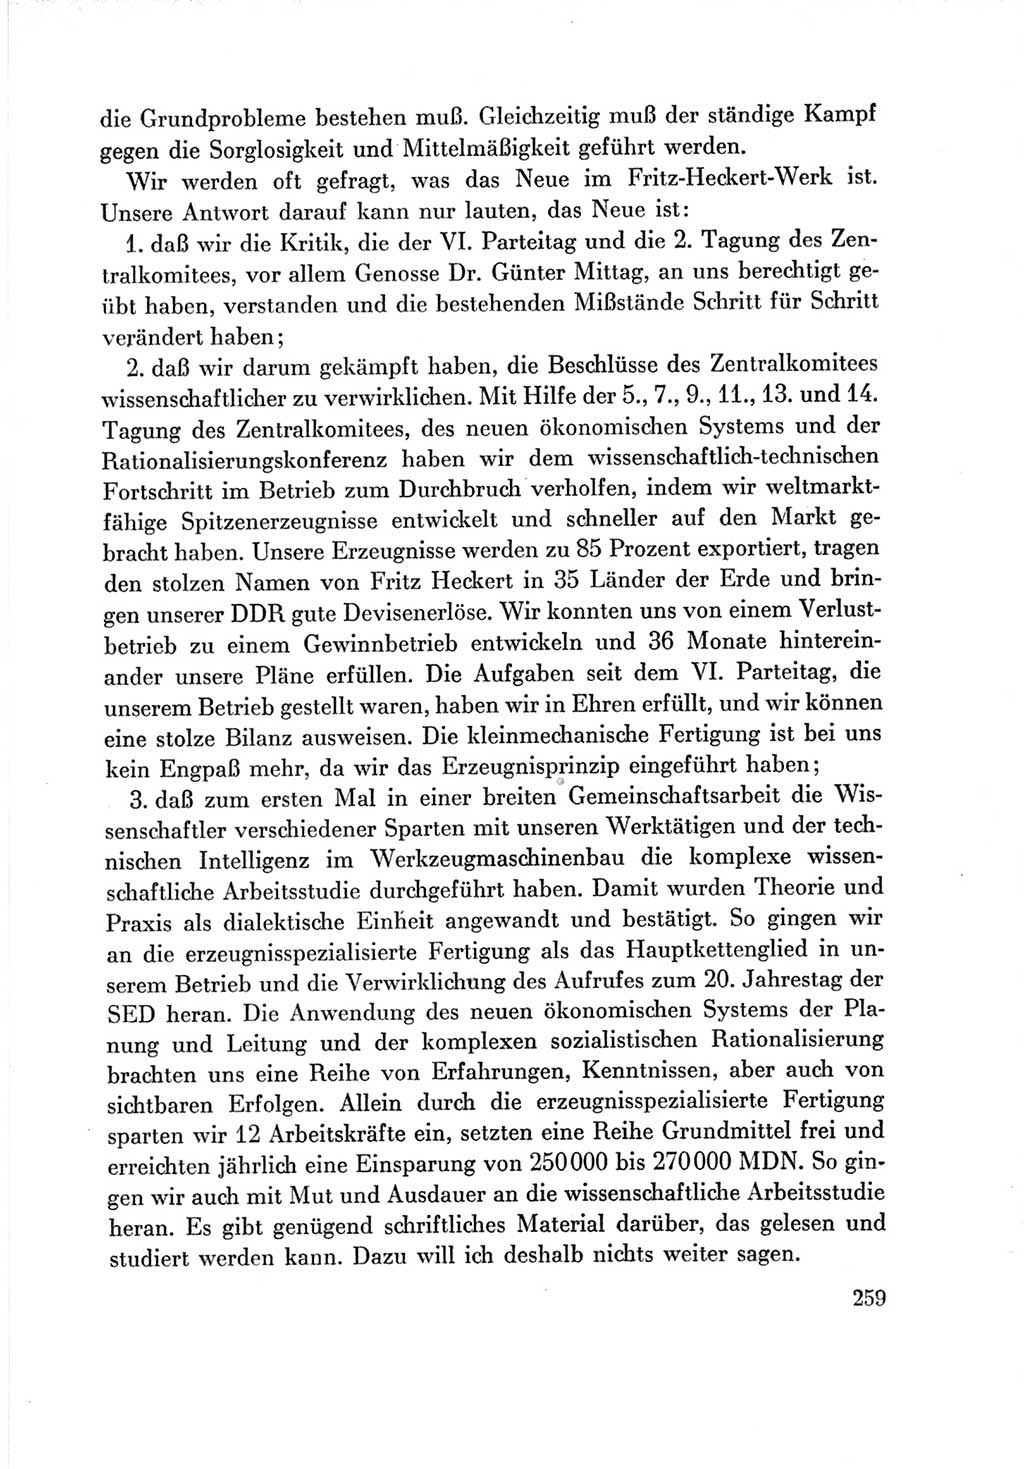 Protokoll der Verhandlungen des Ⅶ. Parteitages der Sozialistischen Einheitspartei Deutschlands (SED) [Deutsche Demokratische Republik (DDR)] 1967, Band Ⅲ, Seite 259 (Prot. Verh. Ⅶ. PT SED DDR 1967, Bd. Ⅲ, S. 259)